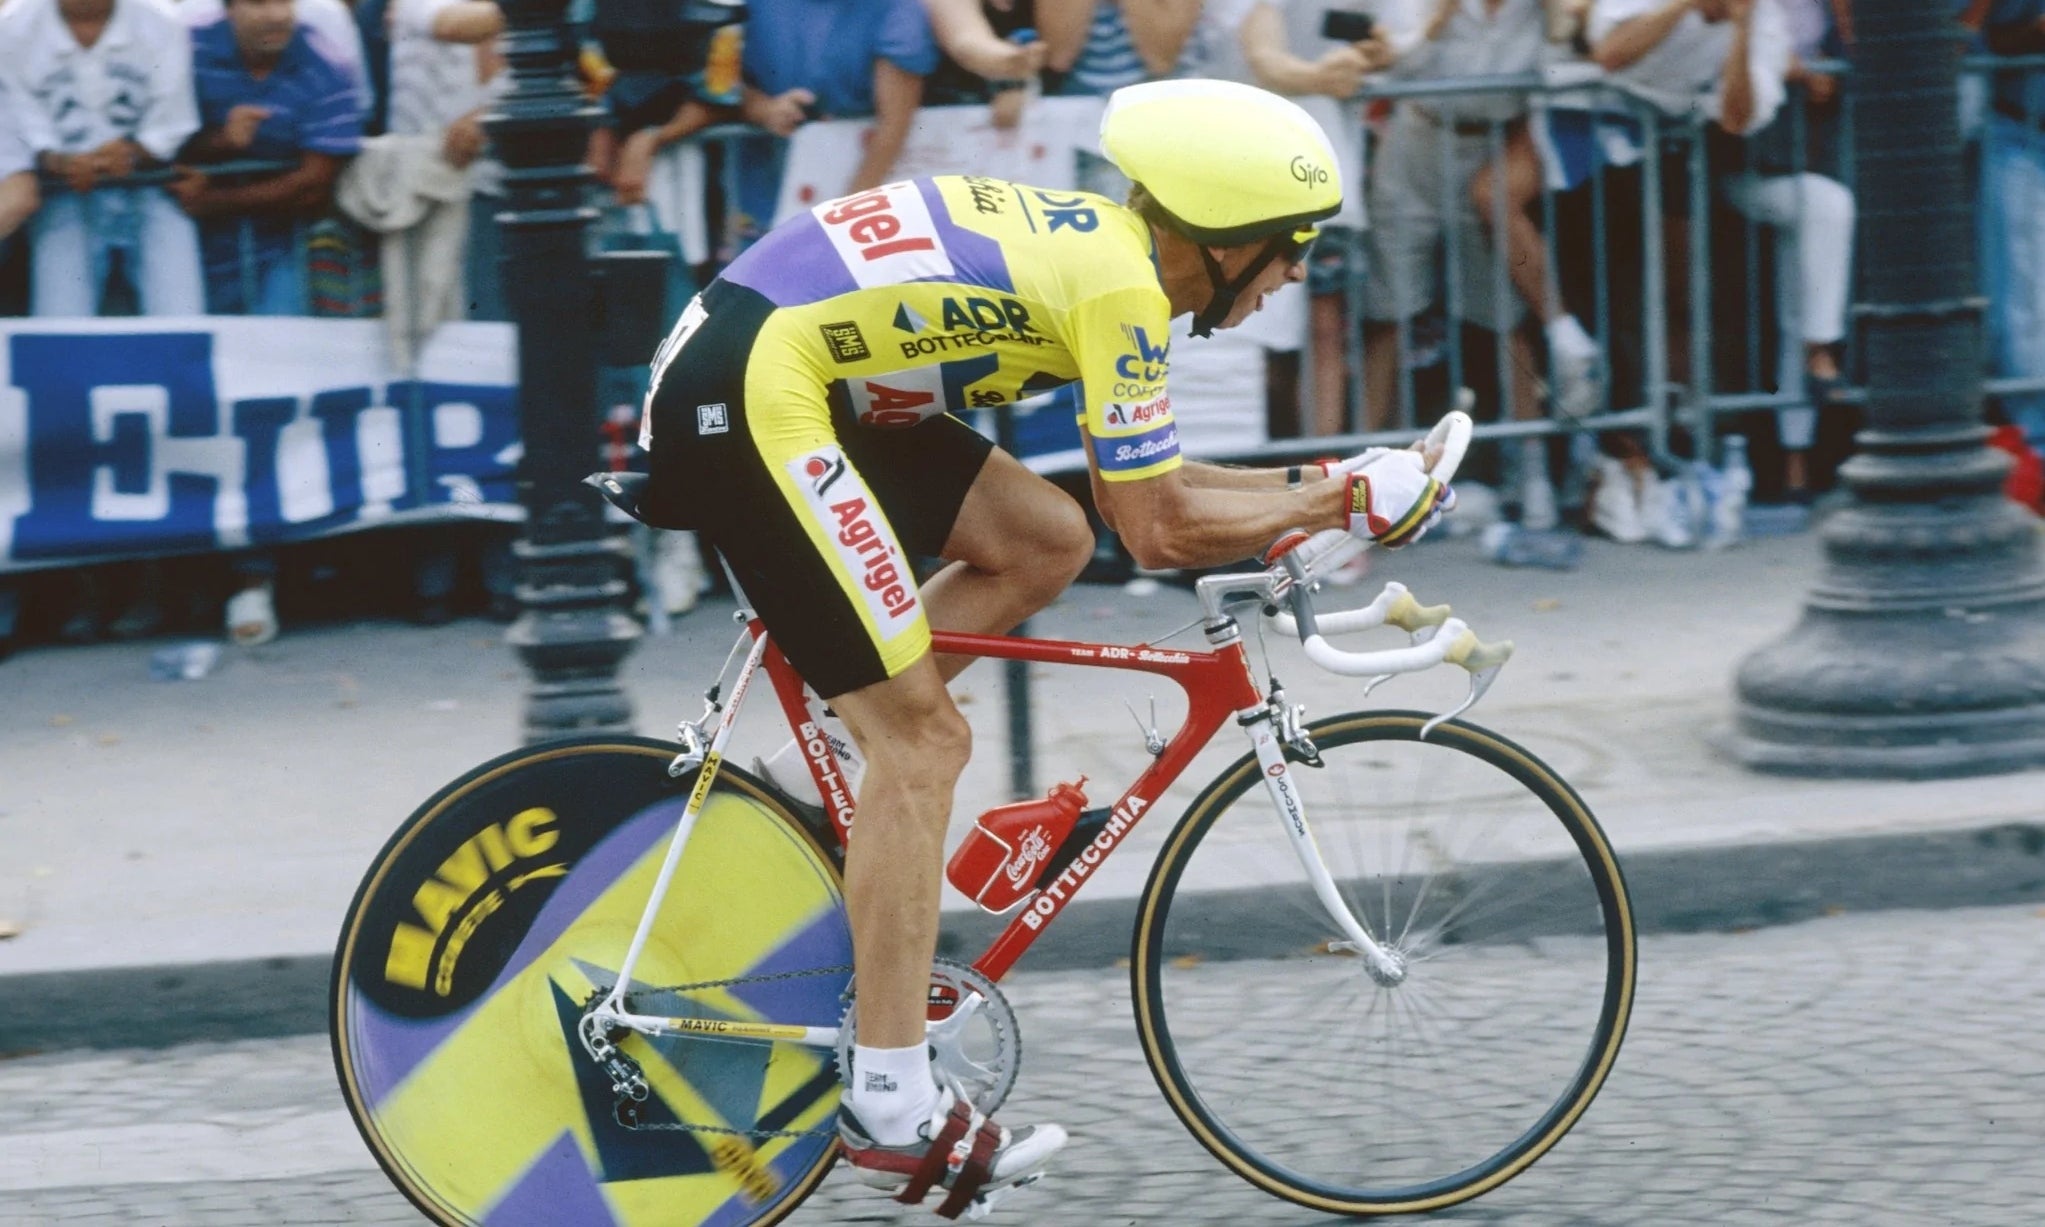 Greg LeMond Tour de France time trial